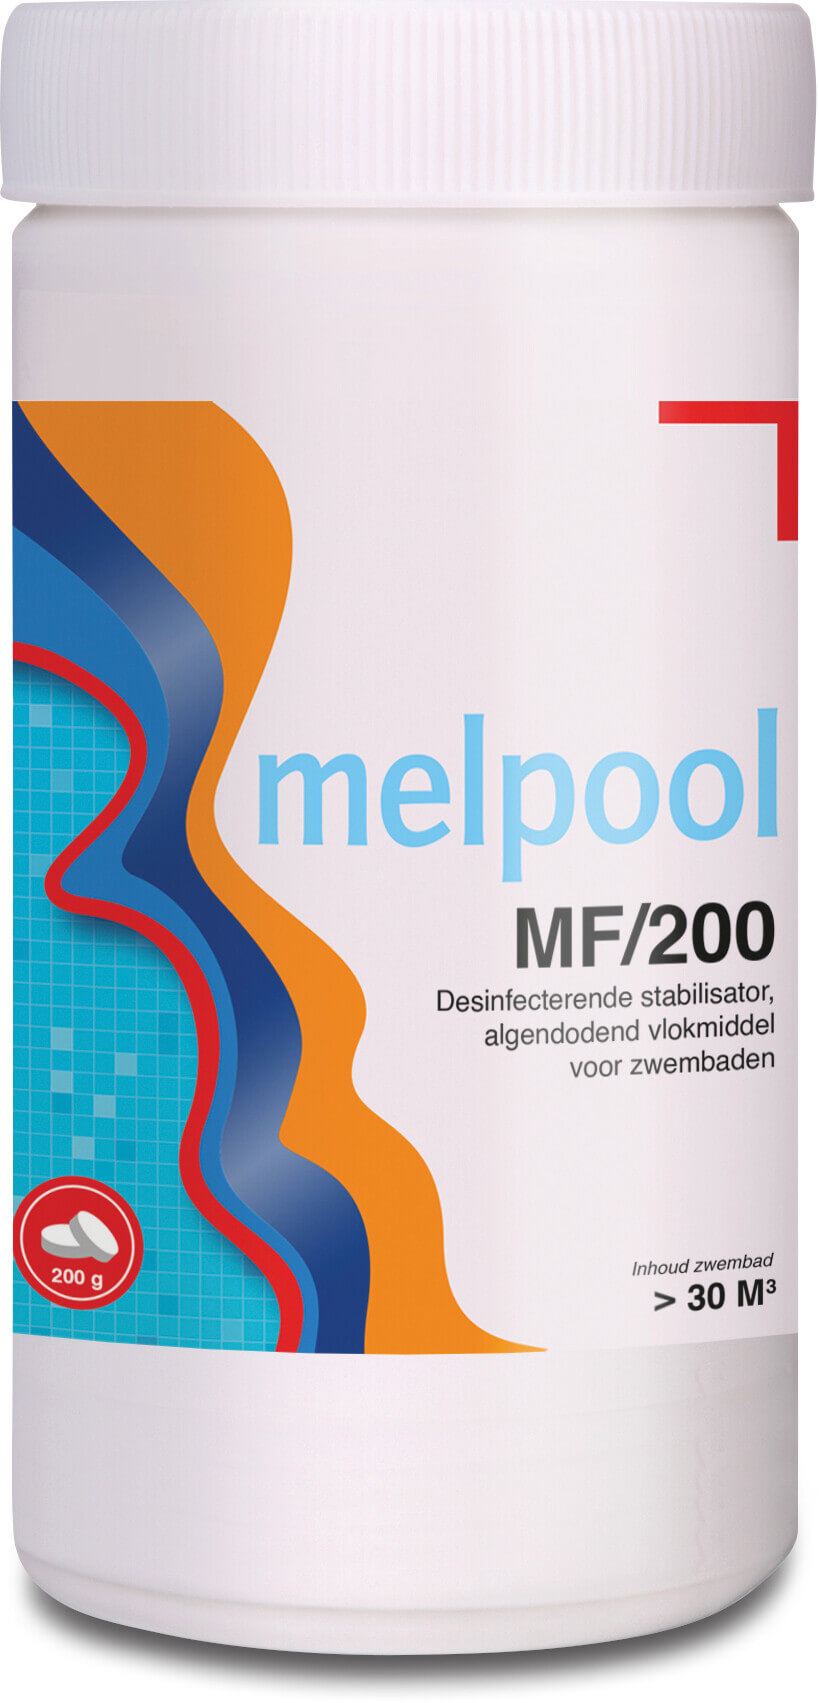 Melpool MF/200 tabletter 1000g type 200g tablett